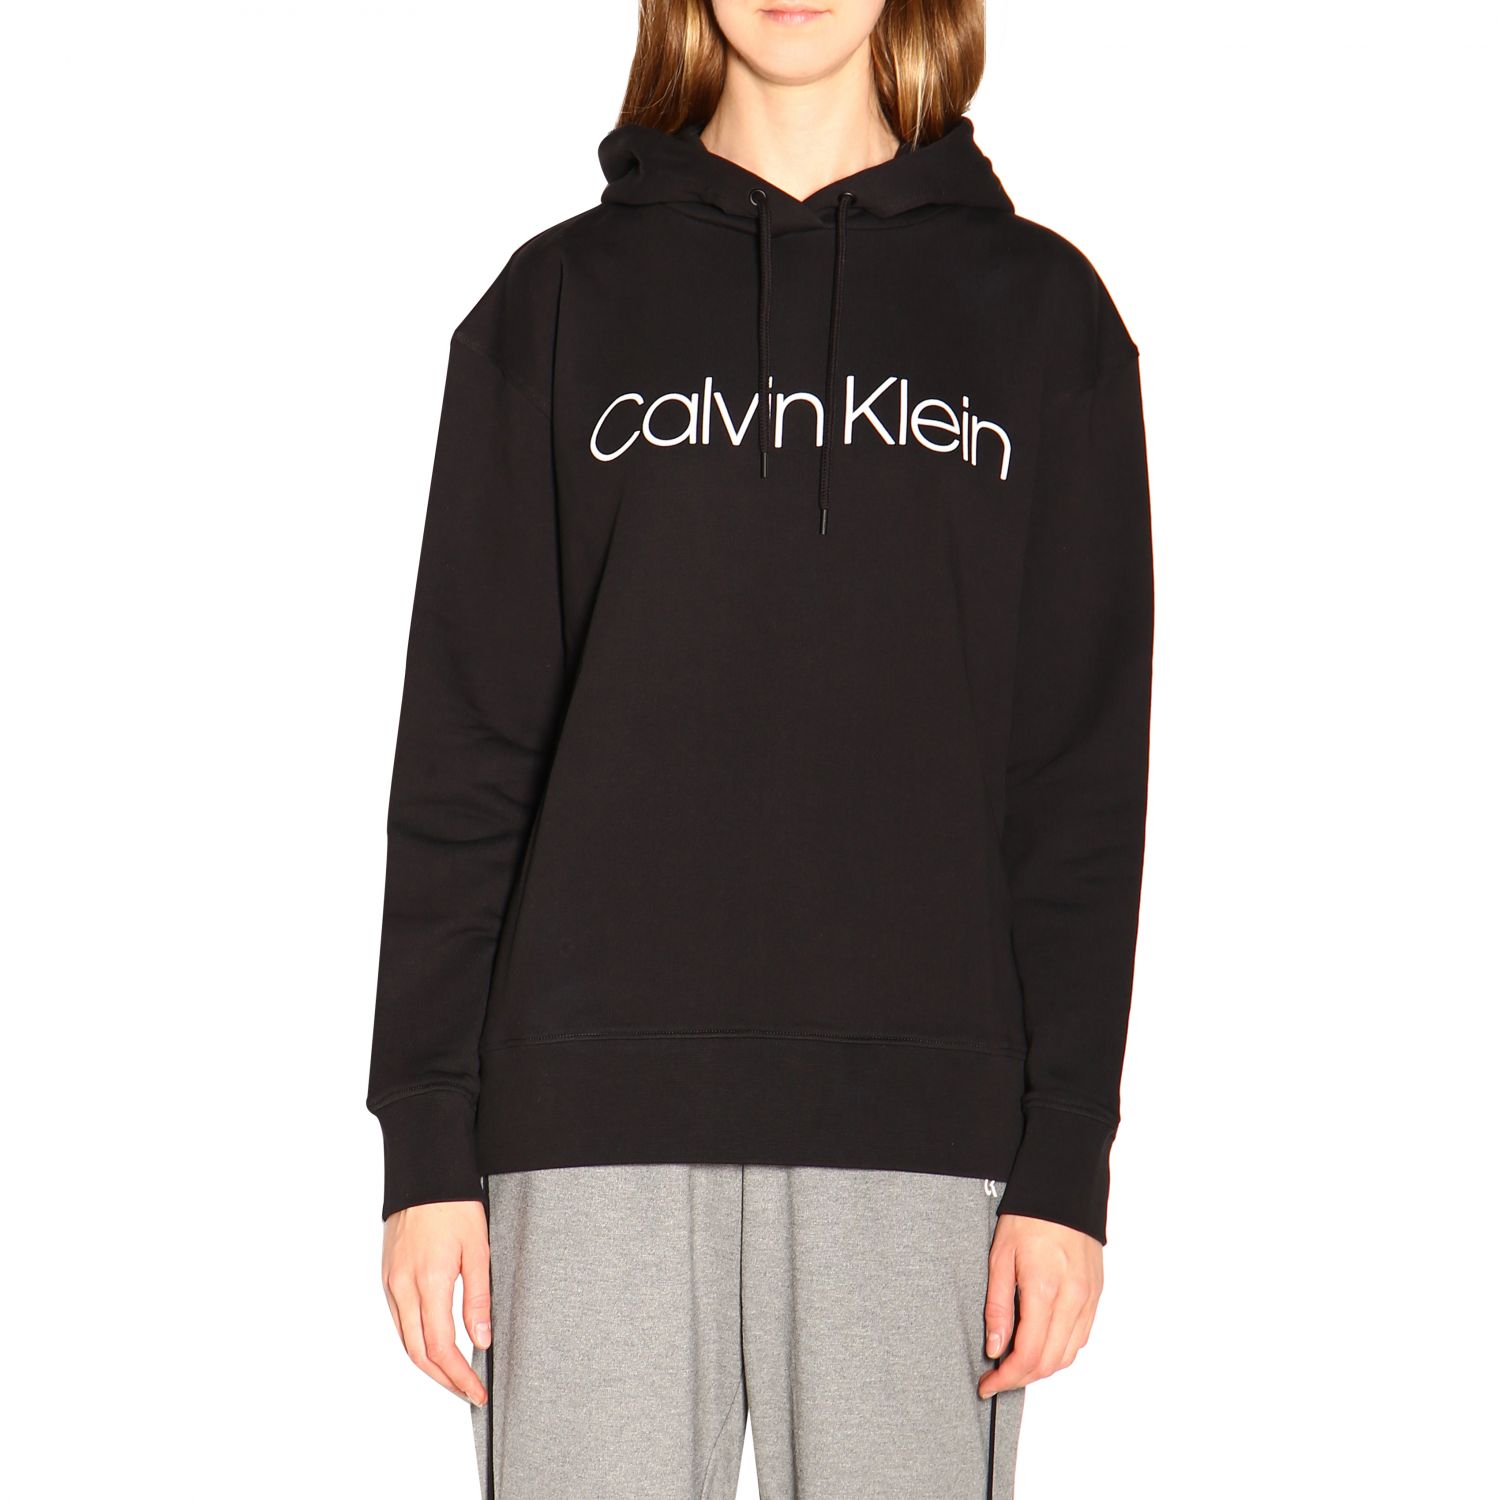 Calvin Klein Outlet: Jumper women - Black | Sweatshirt Calvin Klein ...